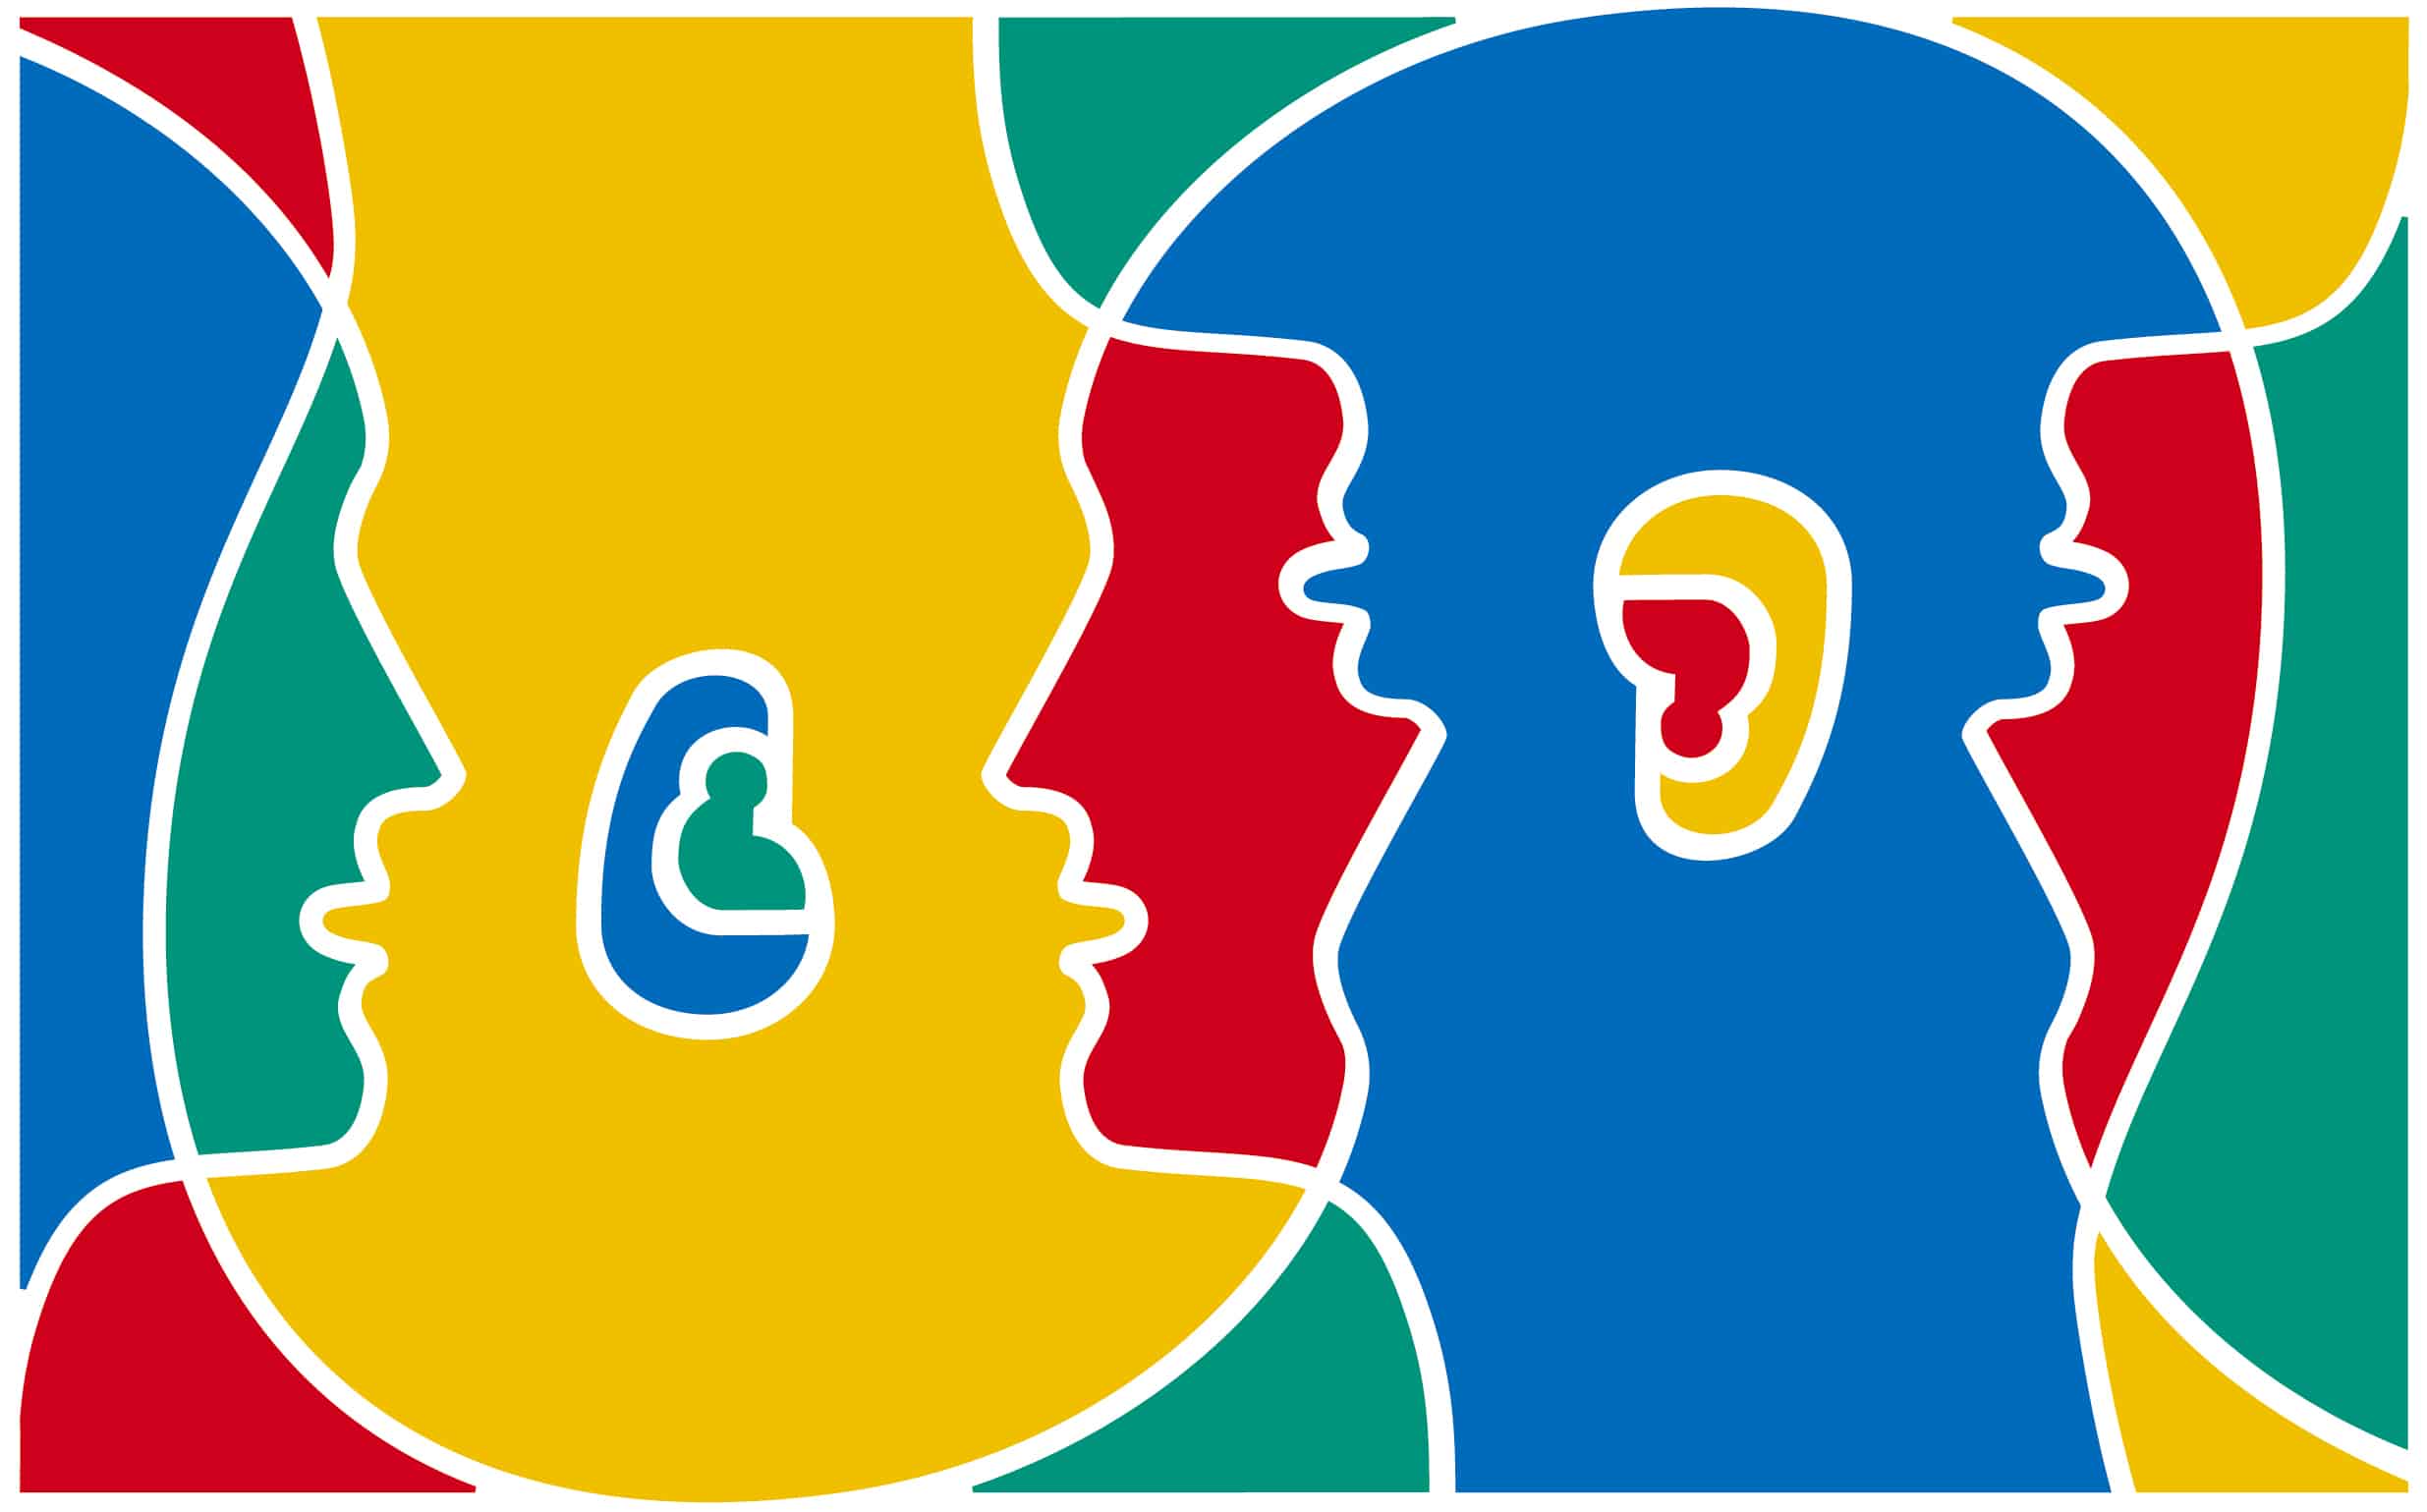 Přečtete si více ze článku Evropský den jazyků